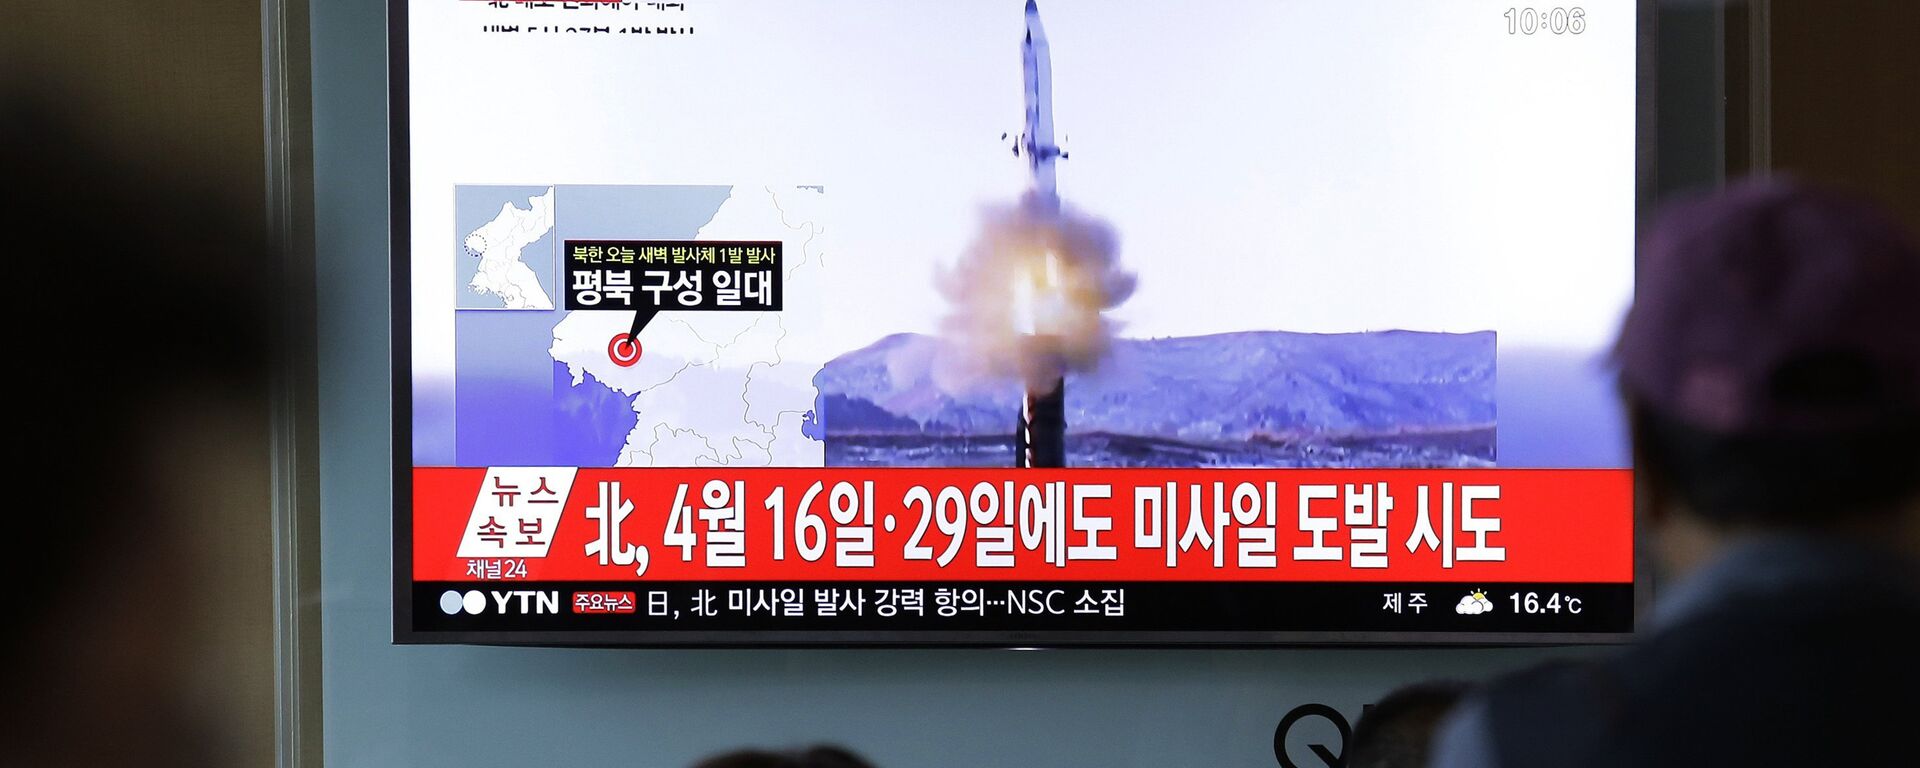 Люди на железнодорожном вокзале в Сеуле смотрят репортаж о Северной Корее, которая произвела в ночь на 14 мая 2017 года пуск баллистической ракеты  - Sputnik Казахстан, 1920, 05.10.2022